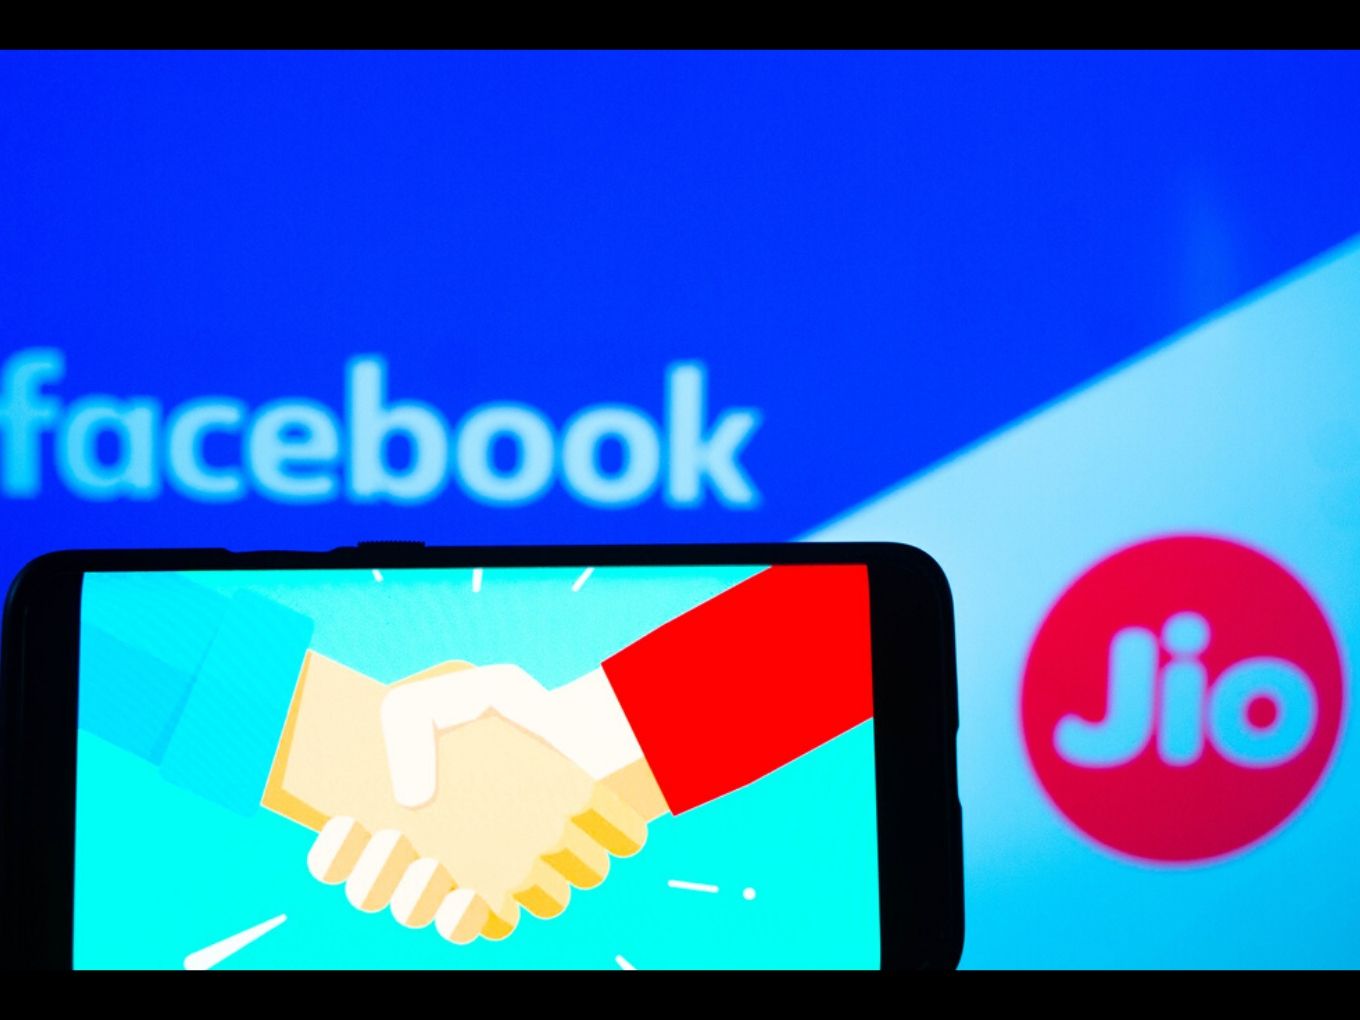 Will Jio-Facebook Get Past Regulatory Hurdle?